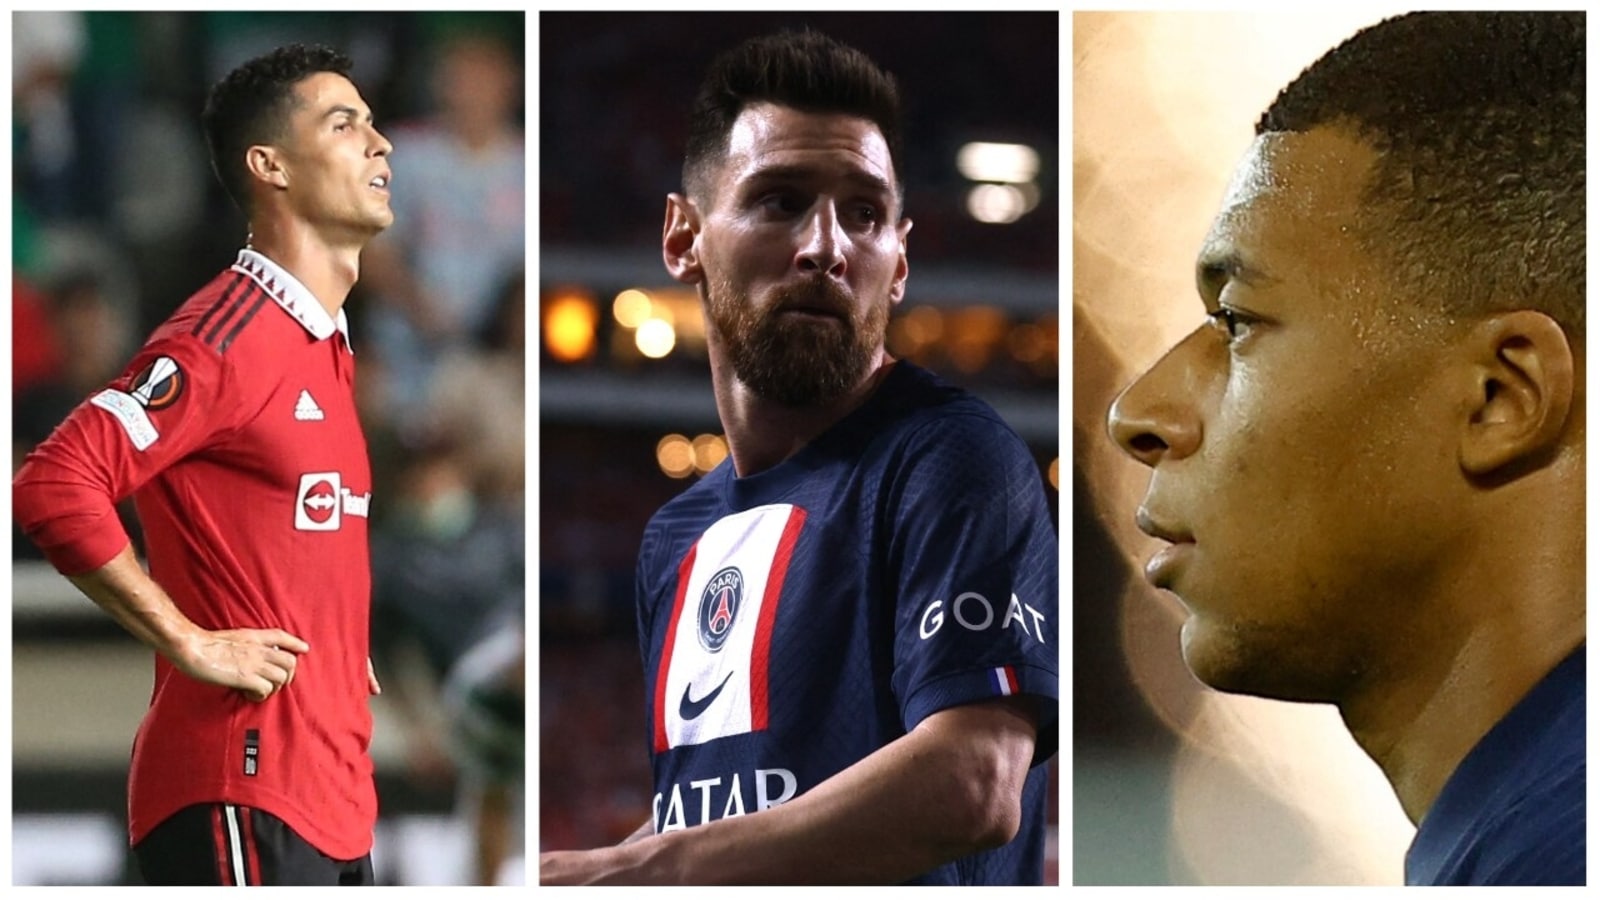 Canal GOAT no LinkedIn: Com Neymar e Cristiano Ronaldo, Canal GOAT